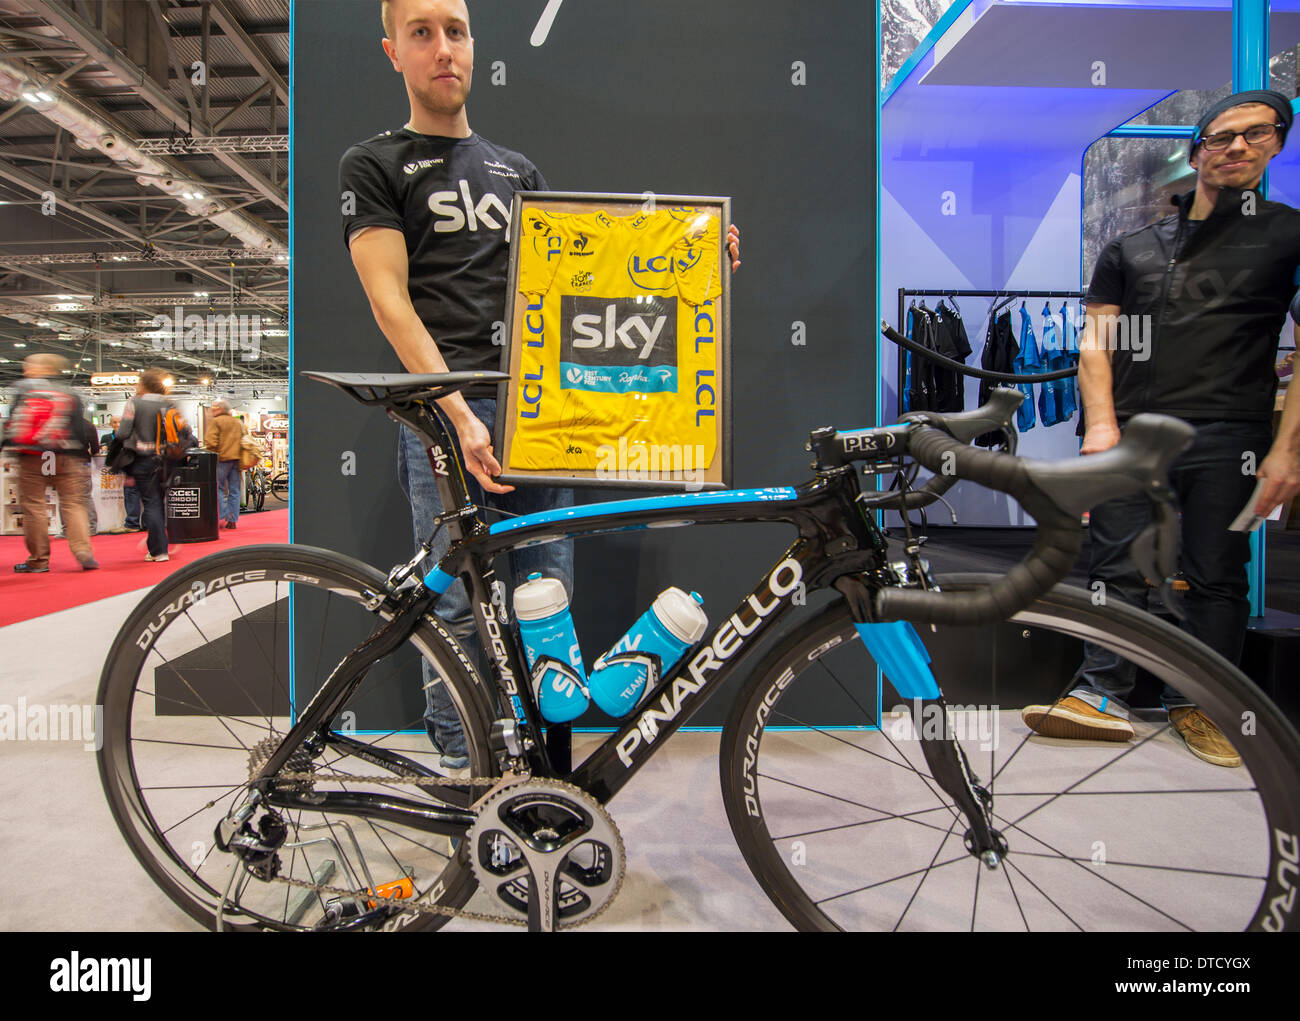 Londres, Reino Unido. 15 Feb, 2014. La más grande del Reino Unido  exhibiciones de ciclismo muchas nuevas bicicletas. Un miembro del Sky Team  stand muestra el jersey amarillo del Tour de Francia